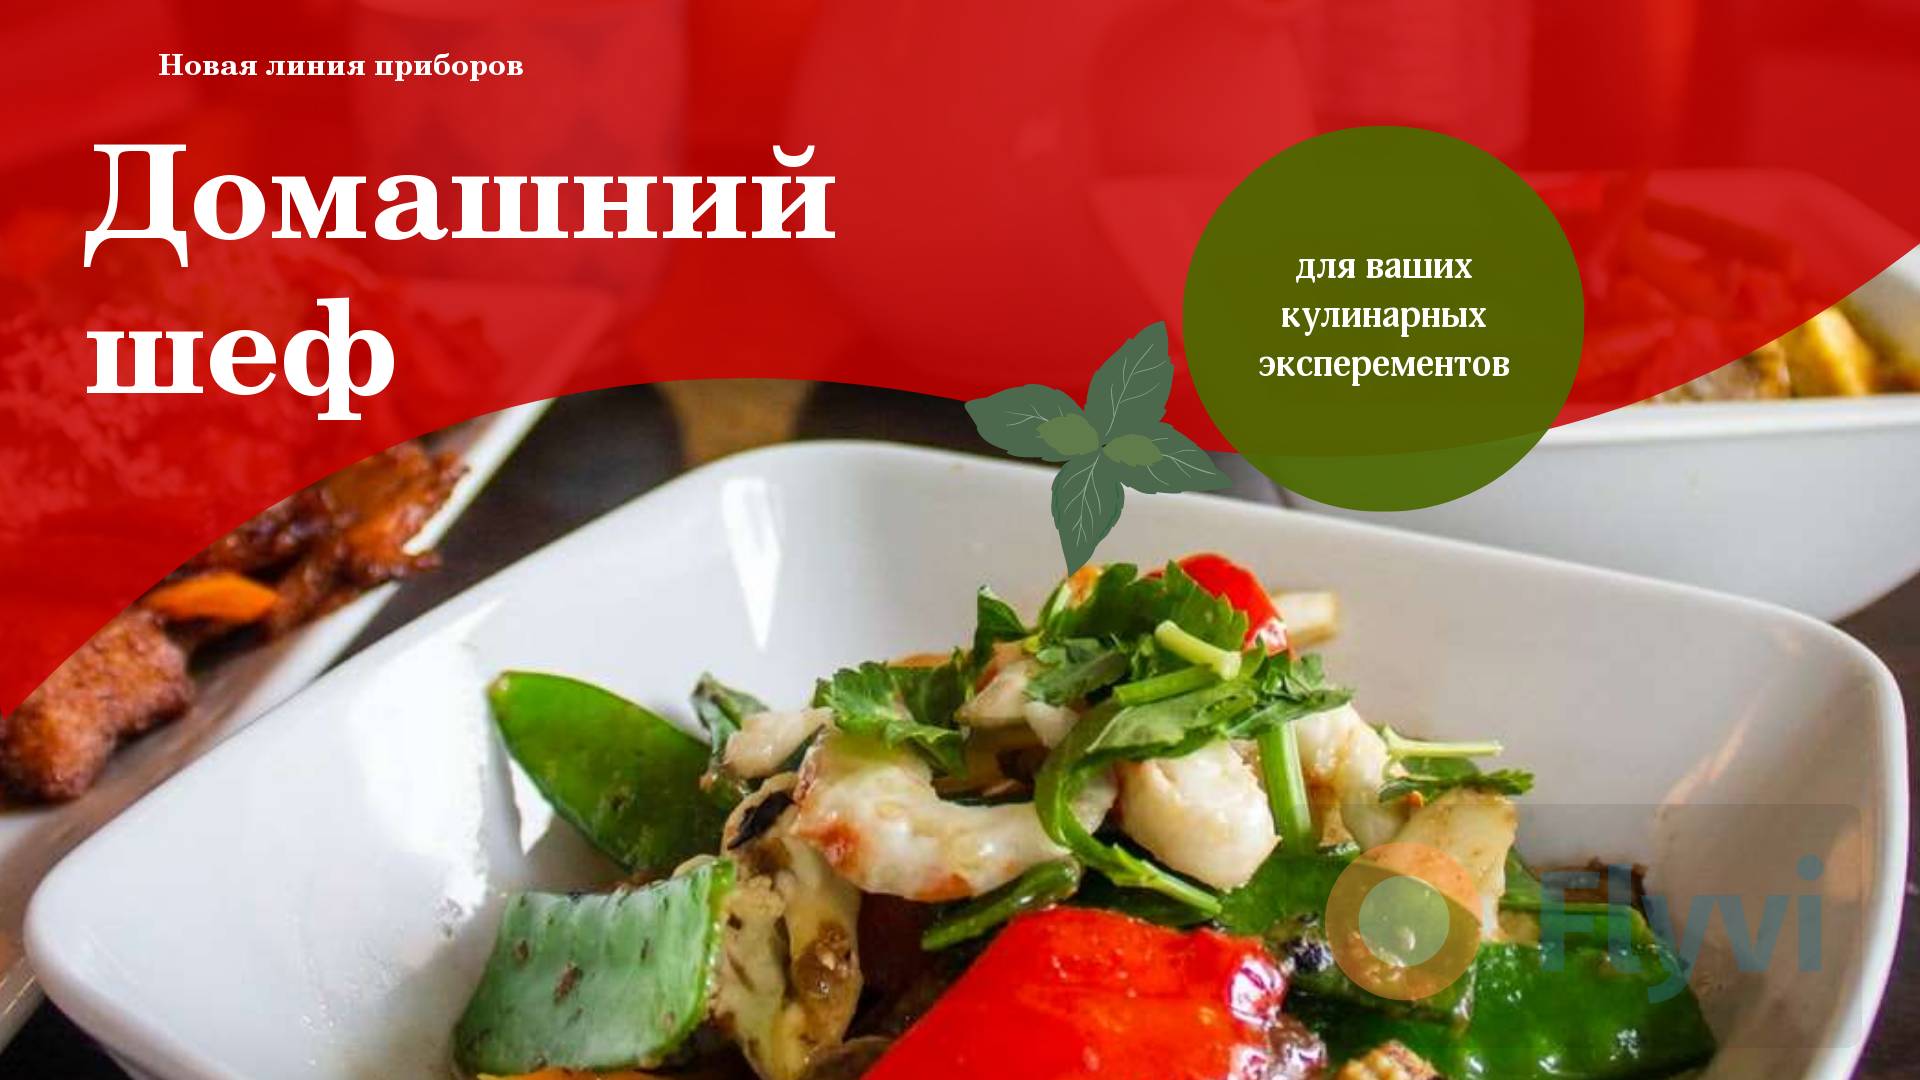 Ярко-красная публикация для соцсетей с блюдом с морепродуктами от шеф повара